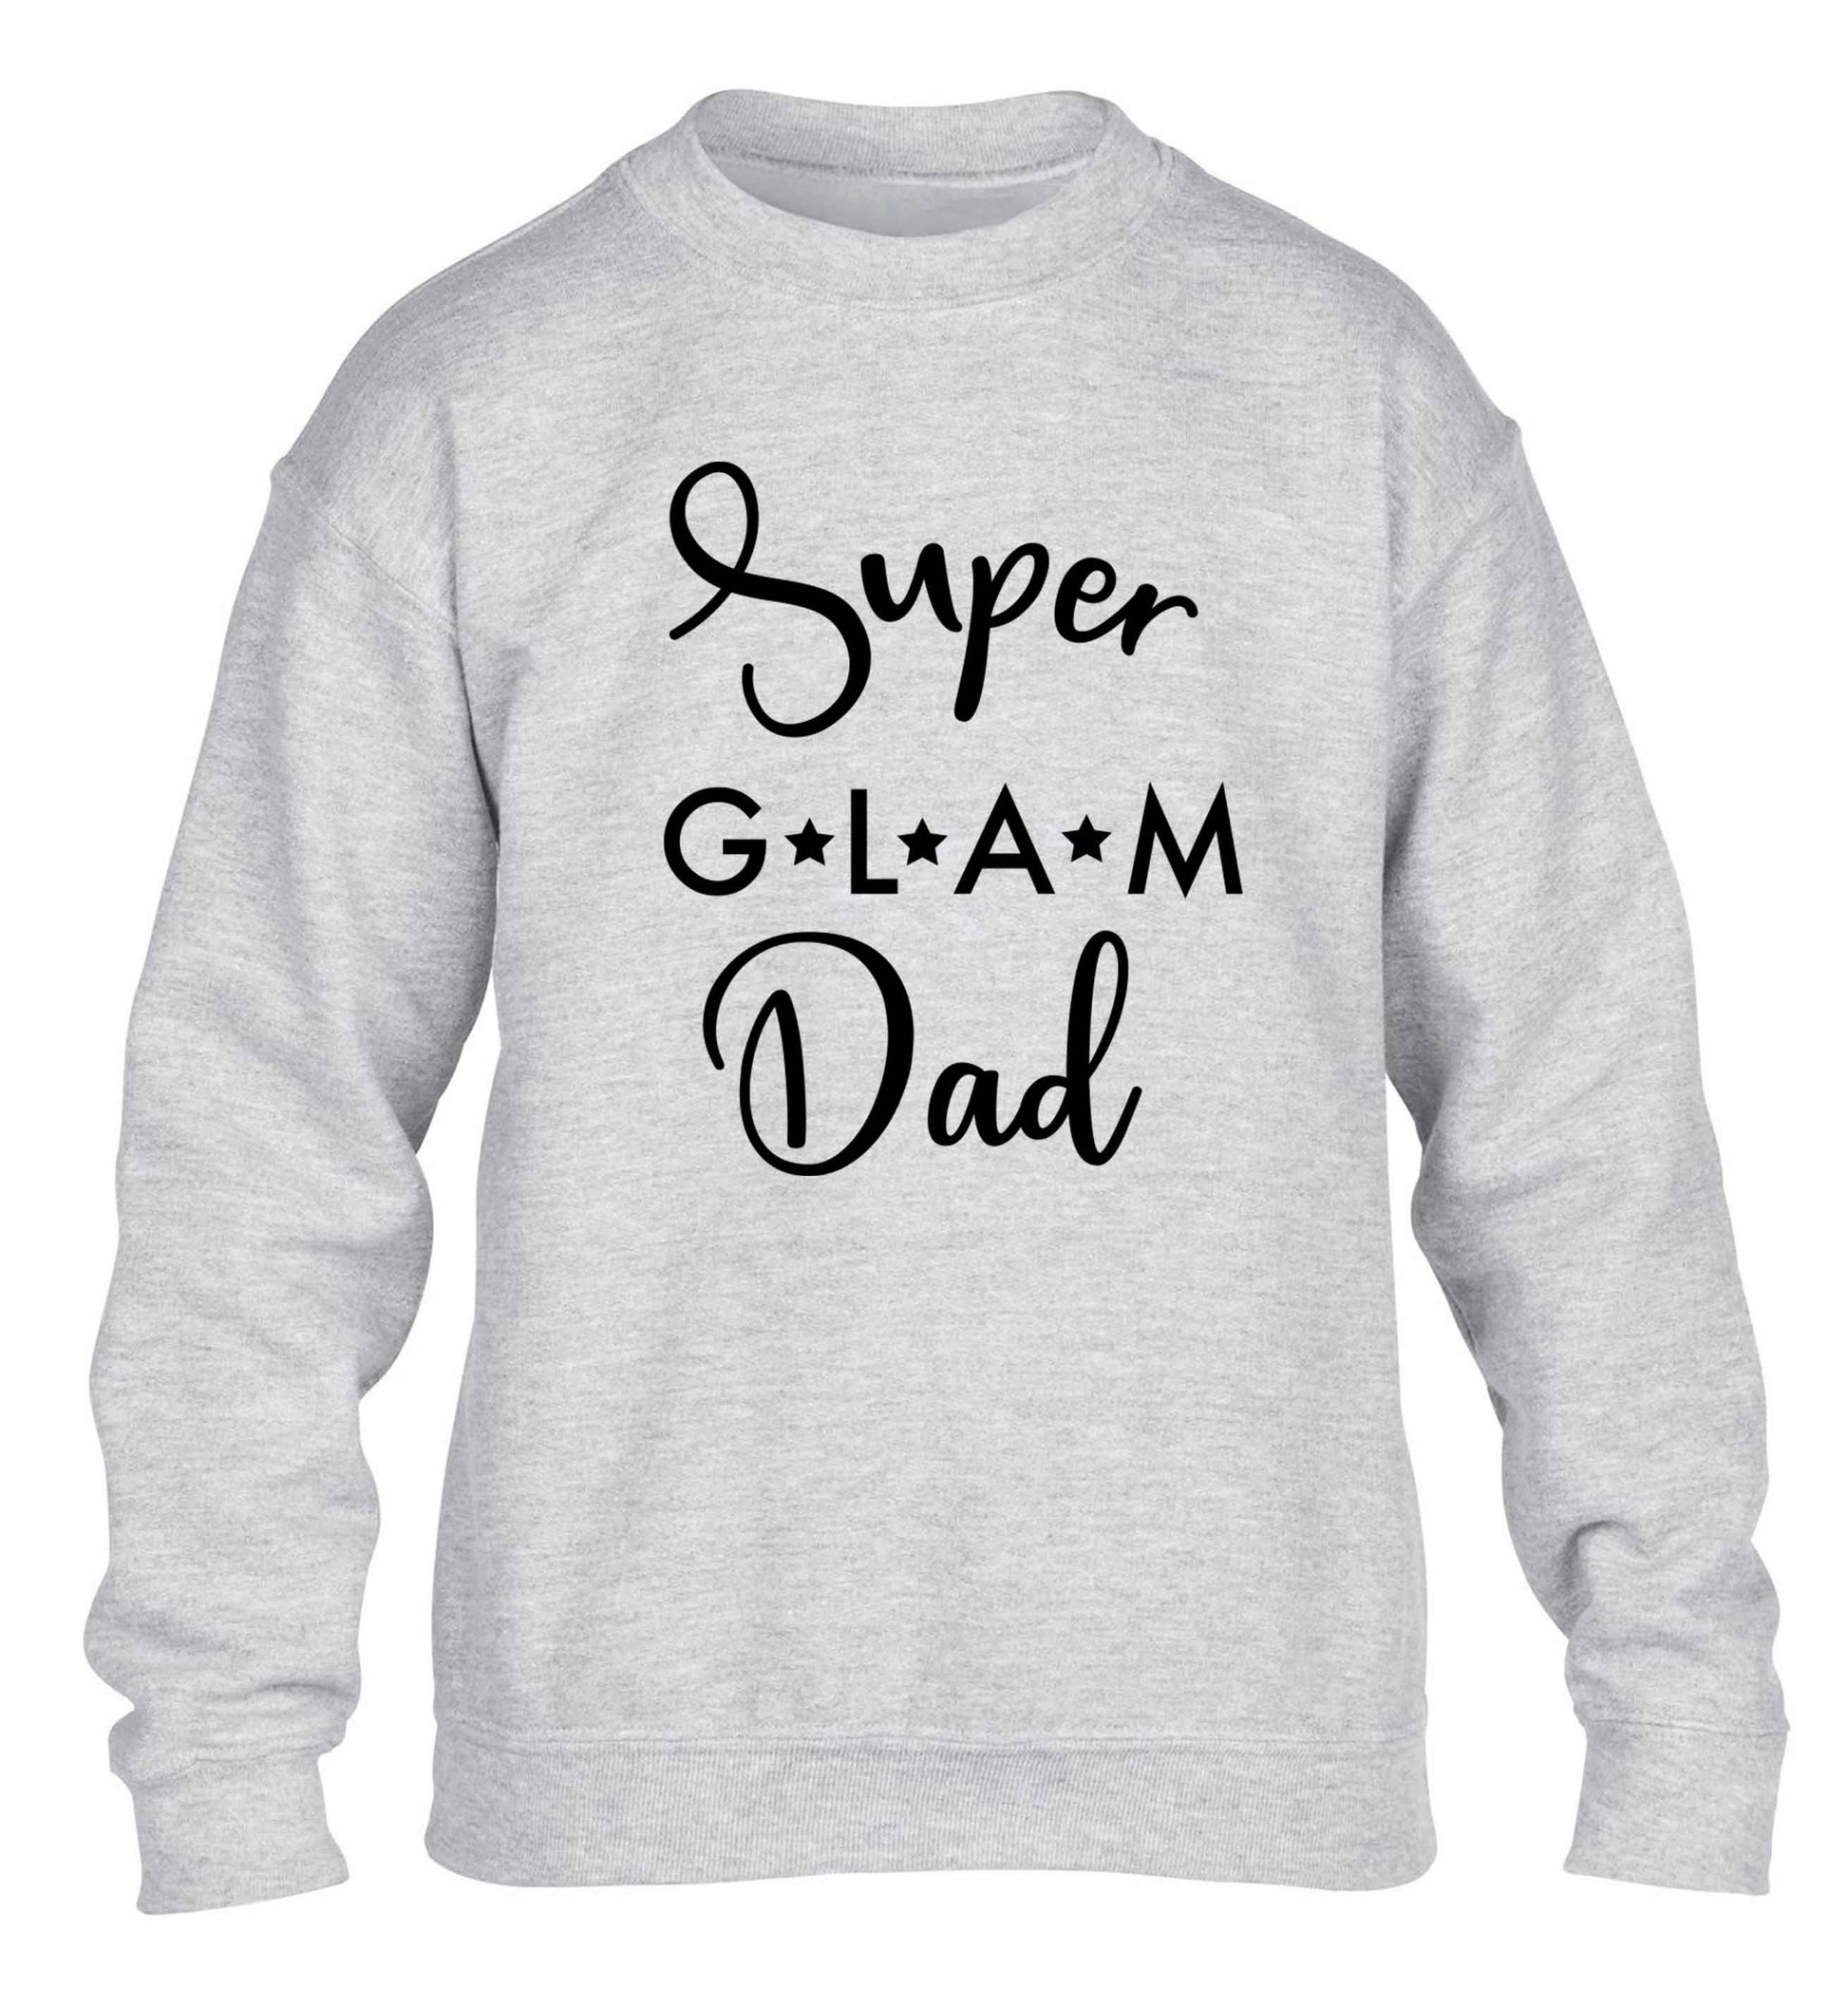 Super glam Dad children's grey sweater 12-13 Years